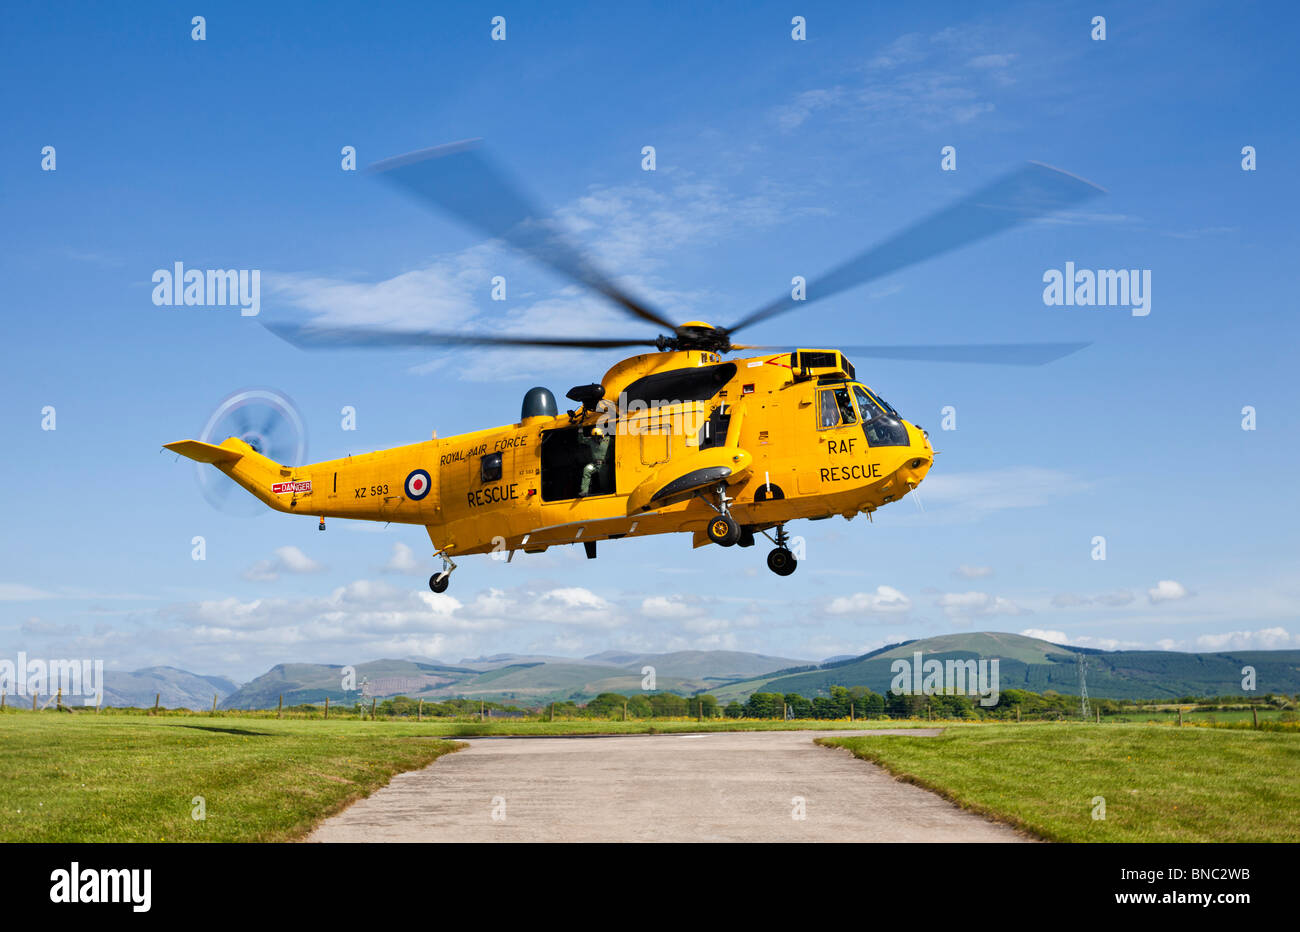 RAF per operazioni di ricerca e salvataggio Sea King elicottero in volo, Cumbria, England, Regno Unito Foto Stock